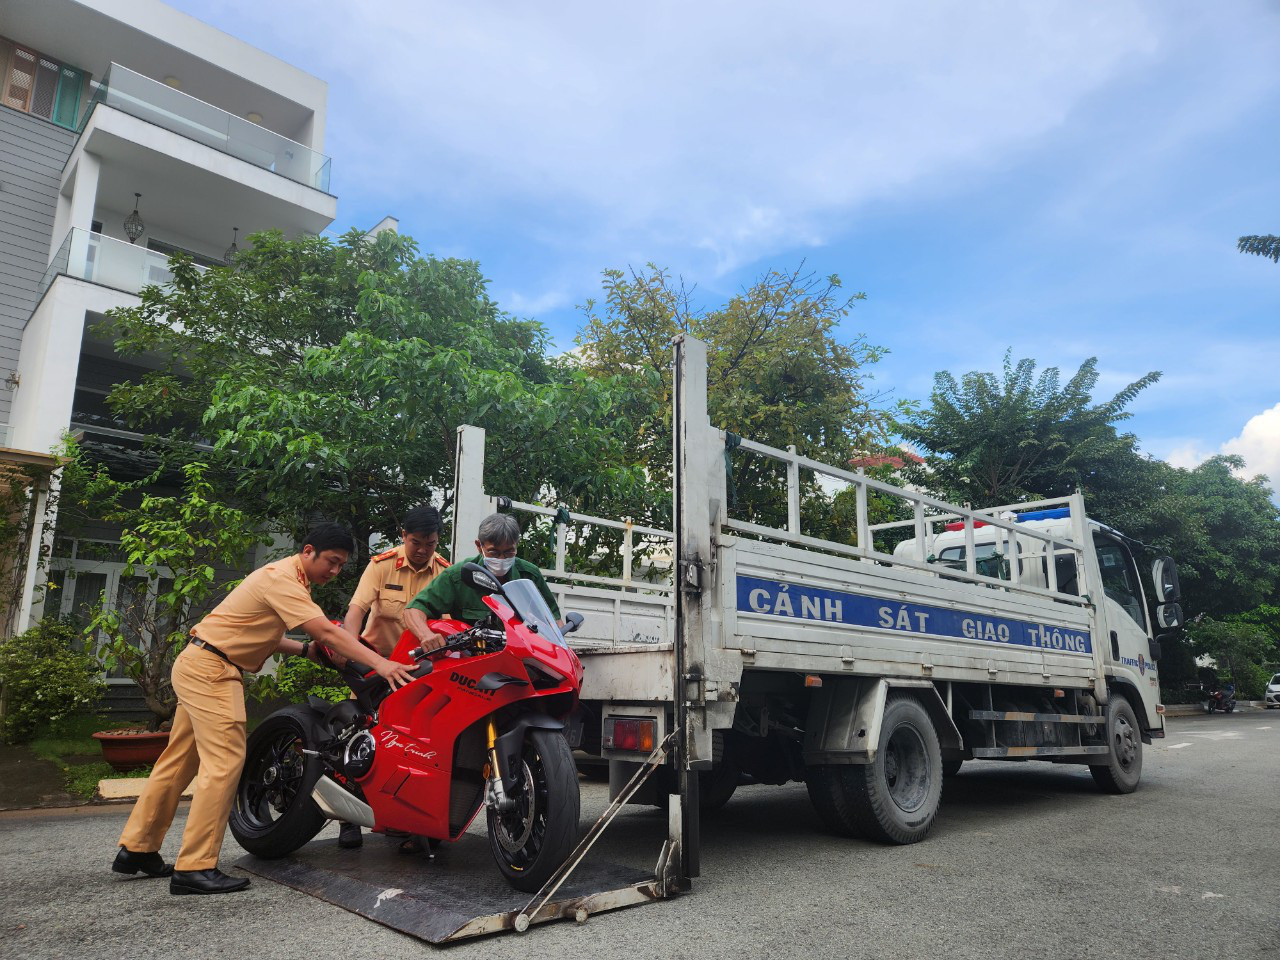 Xe Ducati của Ngọc Trinh bị tạm giữ vì hành vi chạy trên cầu Ba Son có biển số 